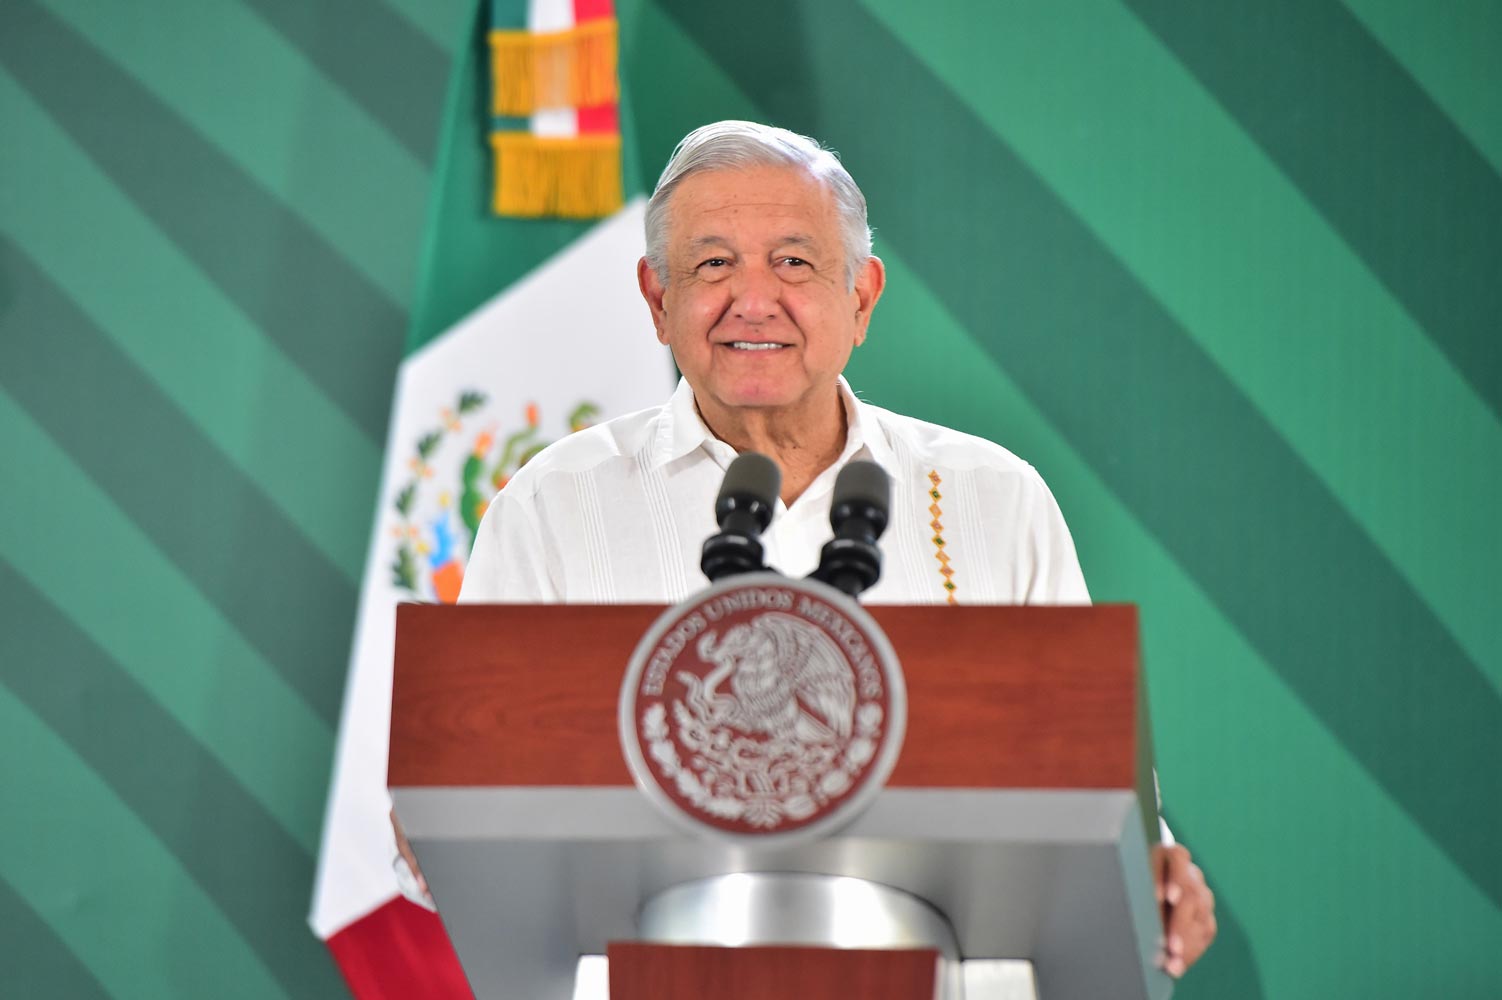 El jefe del Ejecutivo federal insistió en que esperará “a ver sé resuelven” (Foto: Gobierno de México)